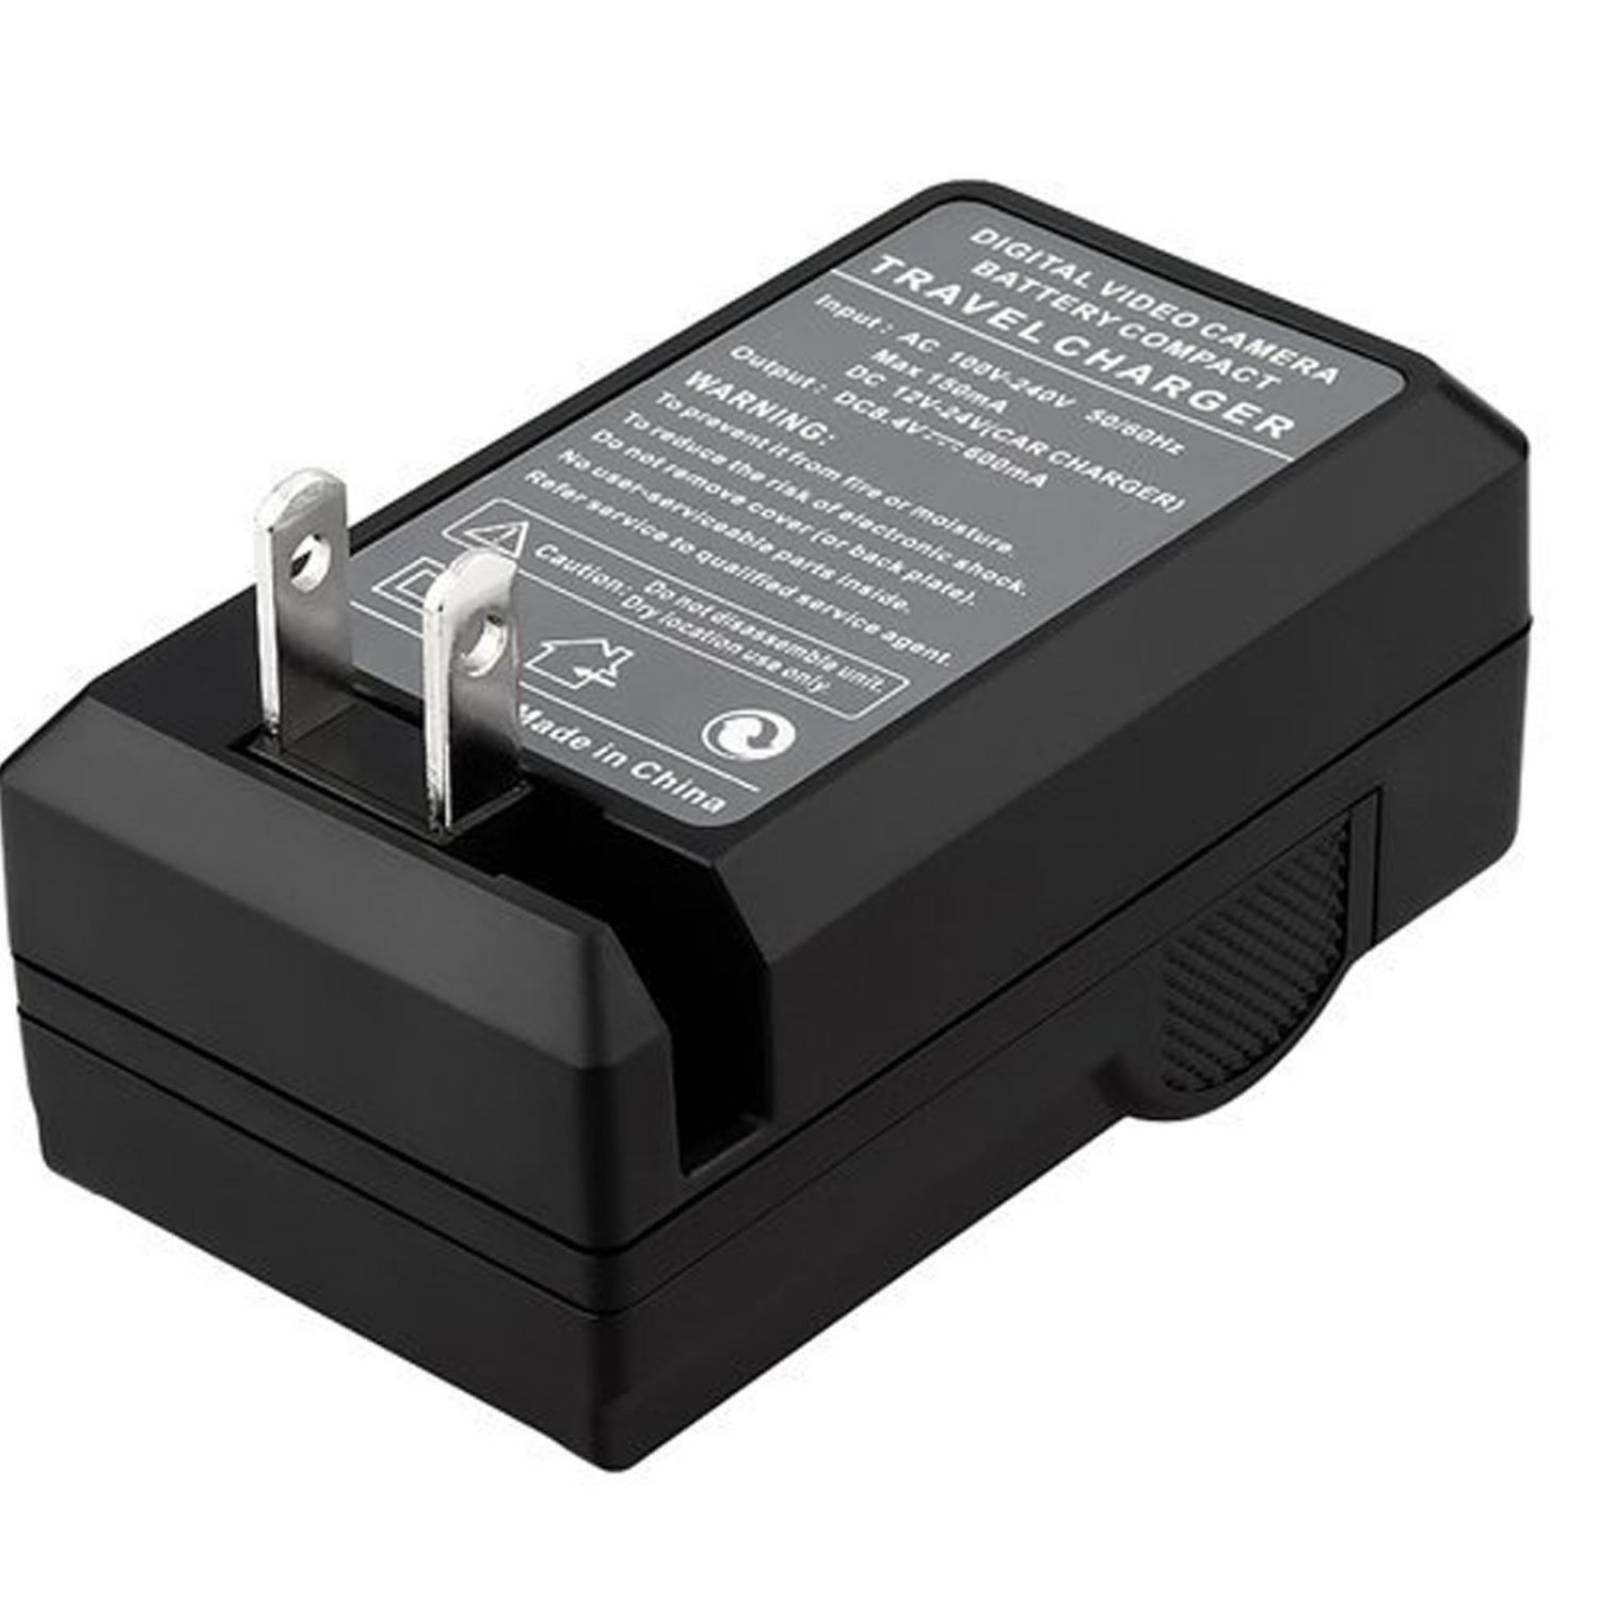 Cargador batería Nixxell Samsung BP1030 BP1130BC-3NX01 ED-BP